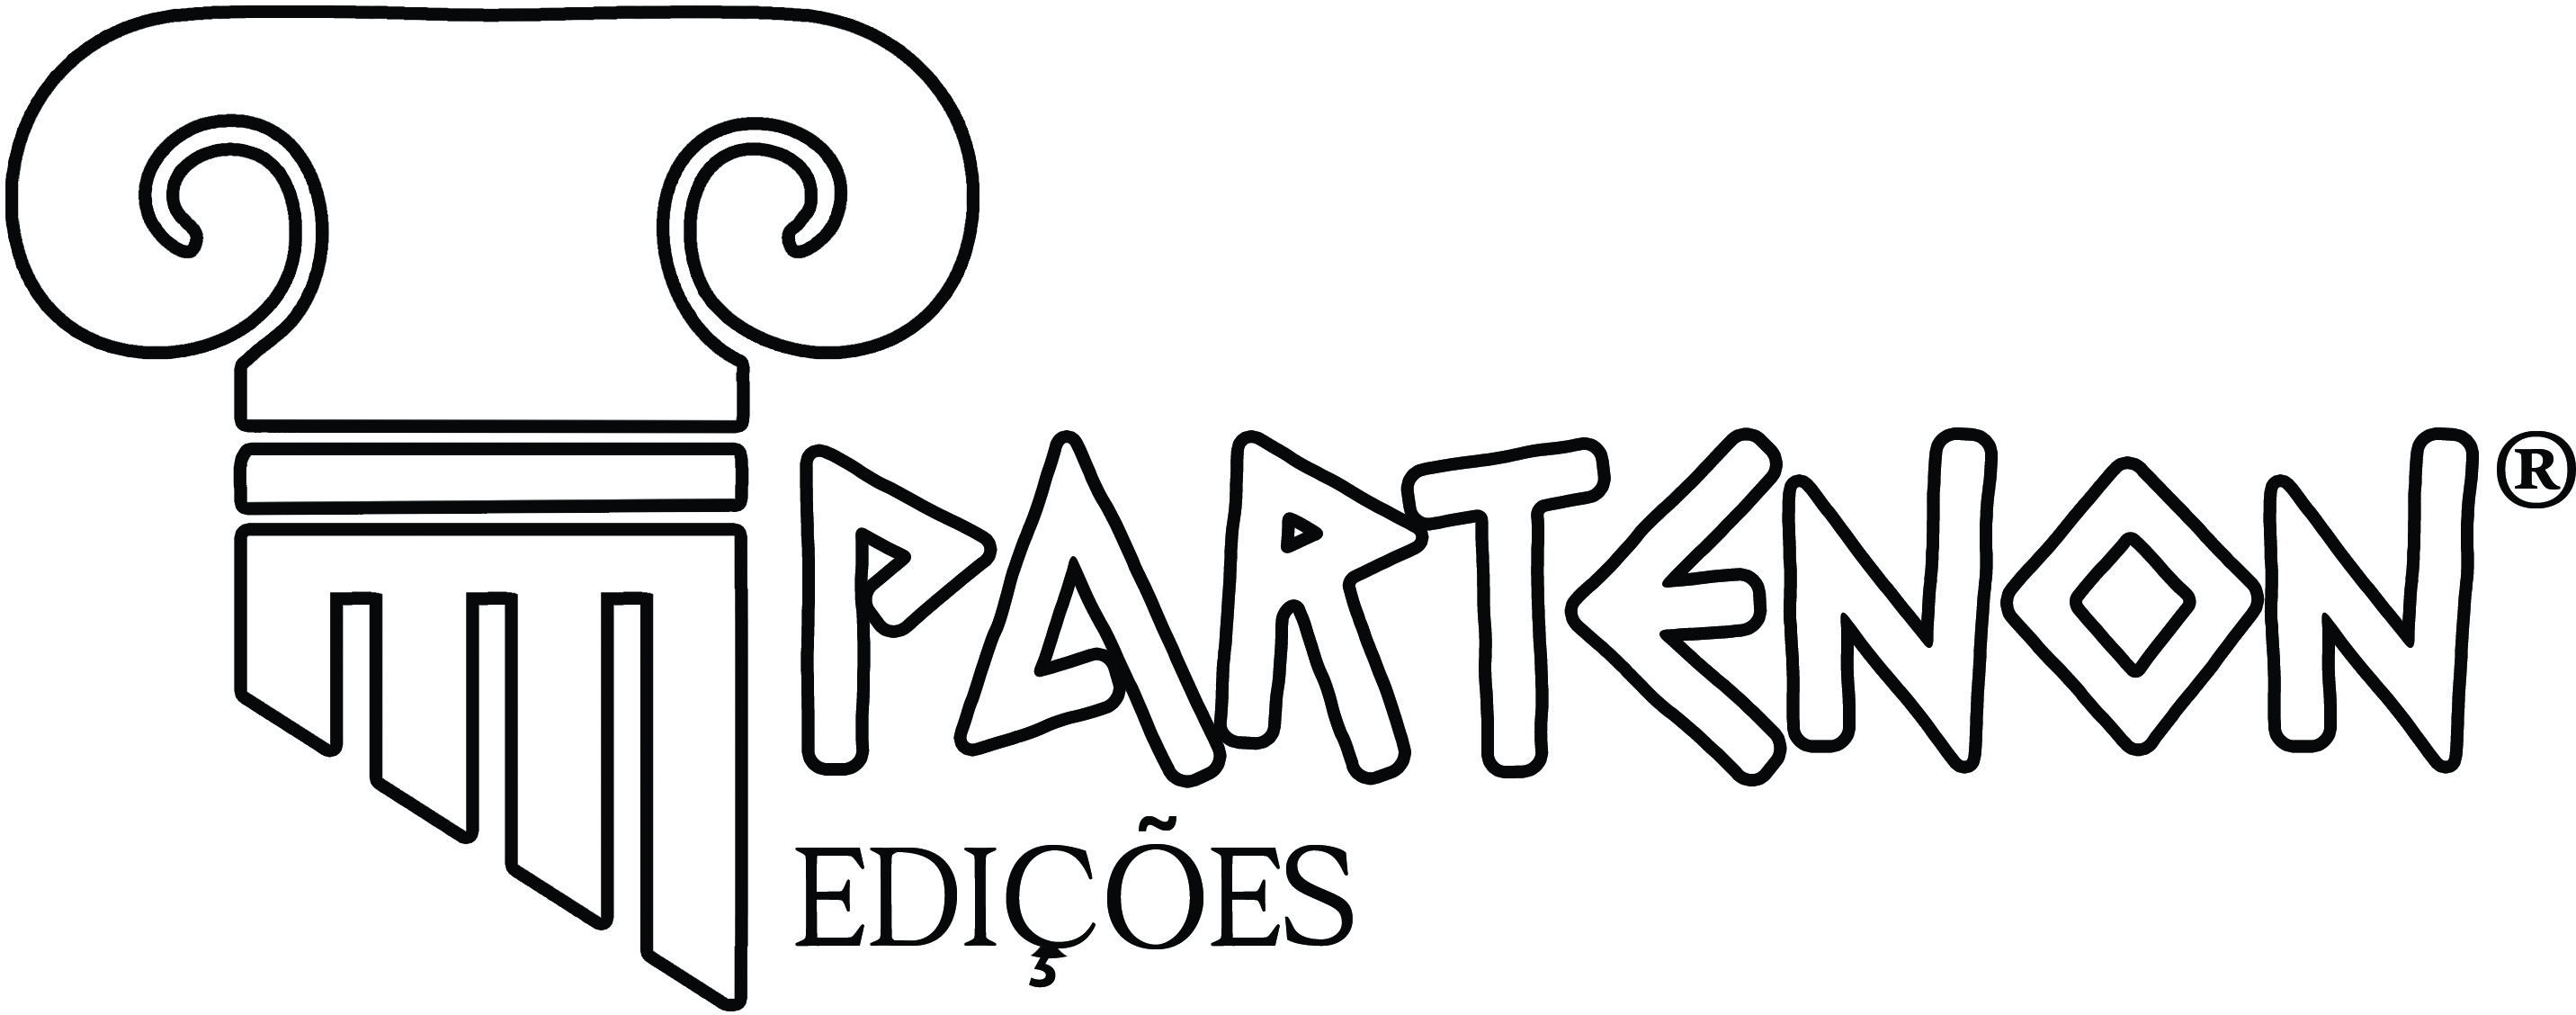 partenon-r-logo